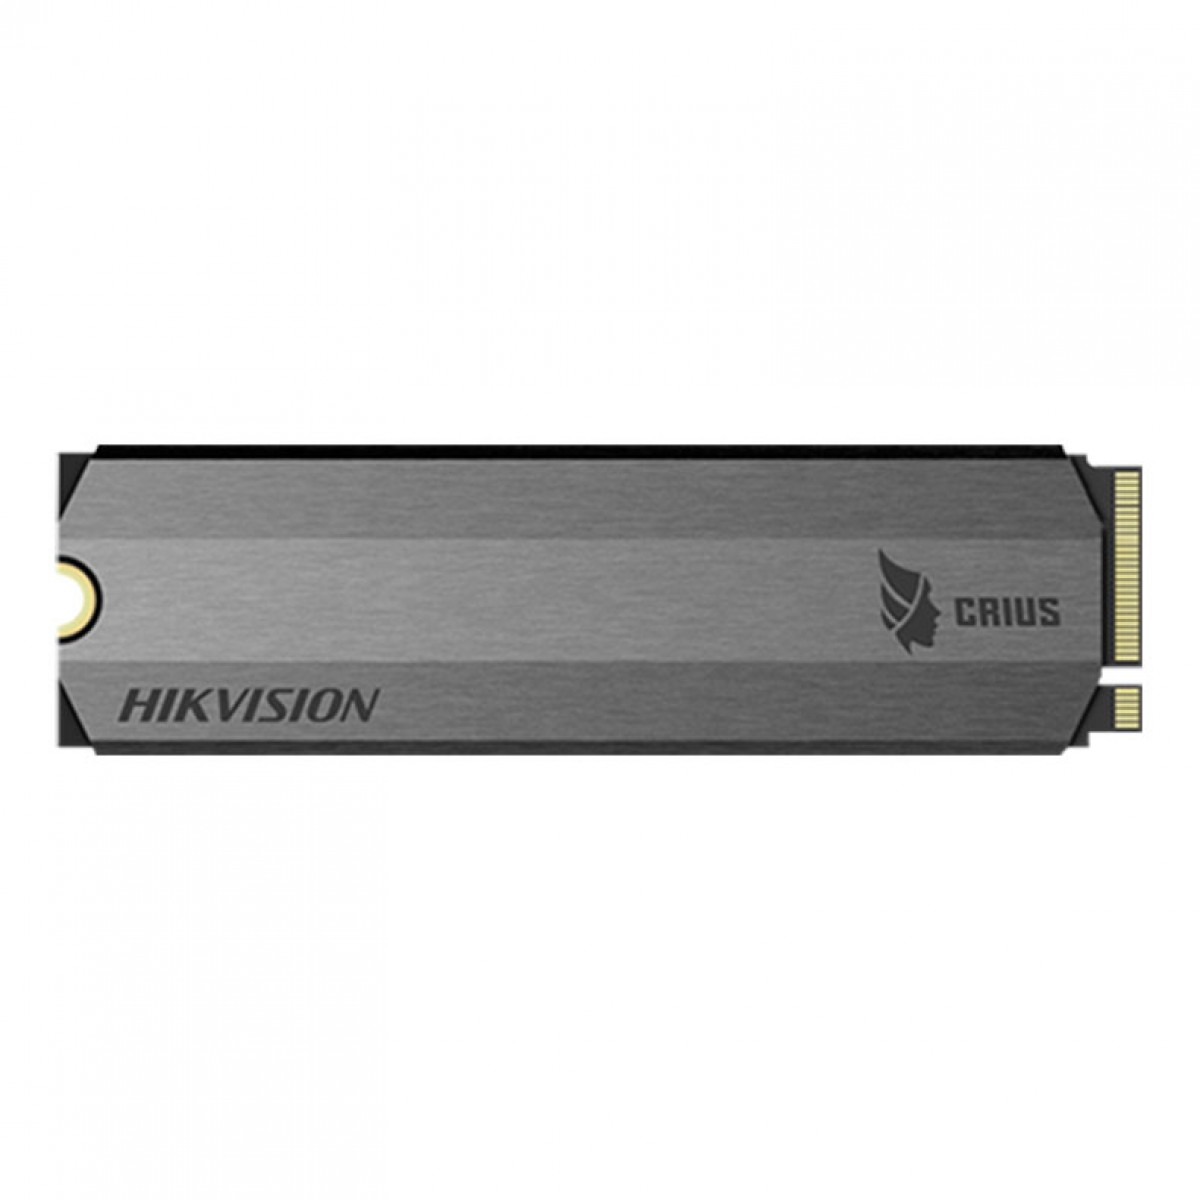 SSD Hikvision E-2000 512GB, M.2 NVME, Leitura 3300MBs e Gravação 2100MBs, HS-SSD-E2000-512GB